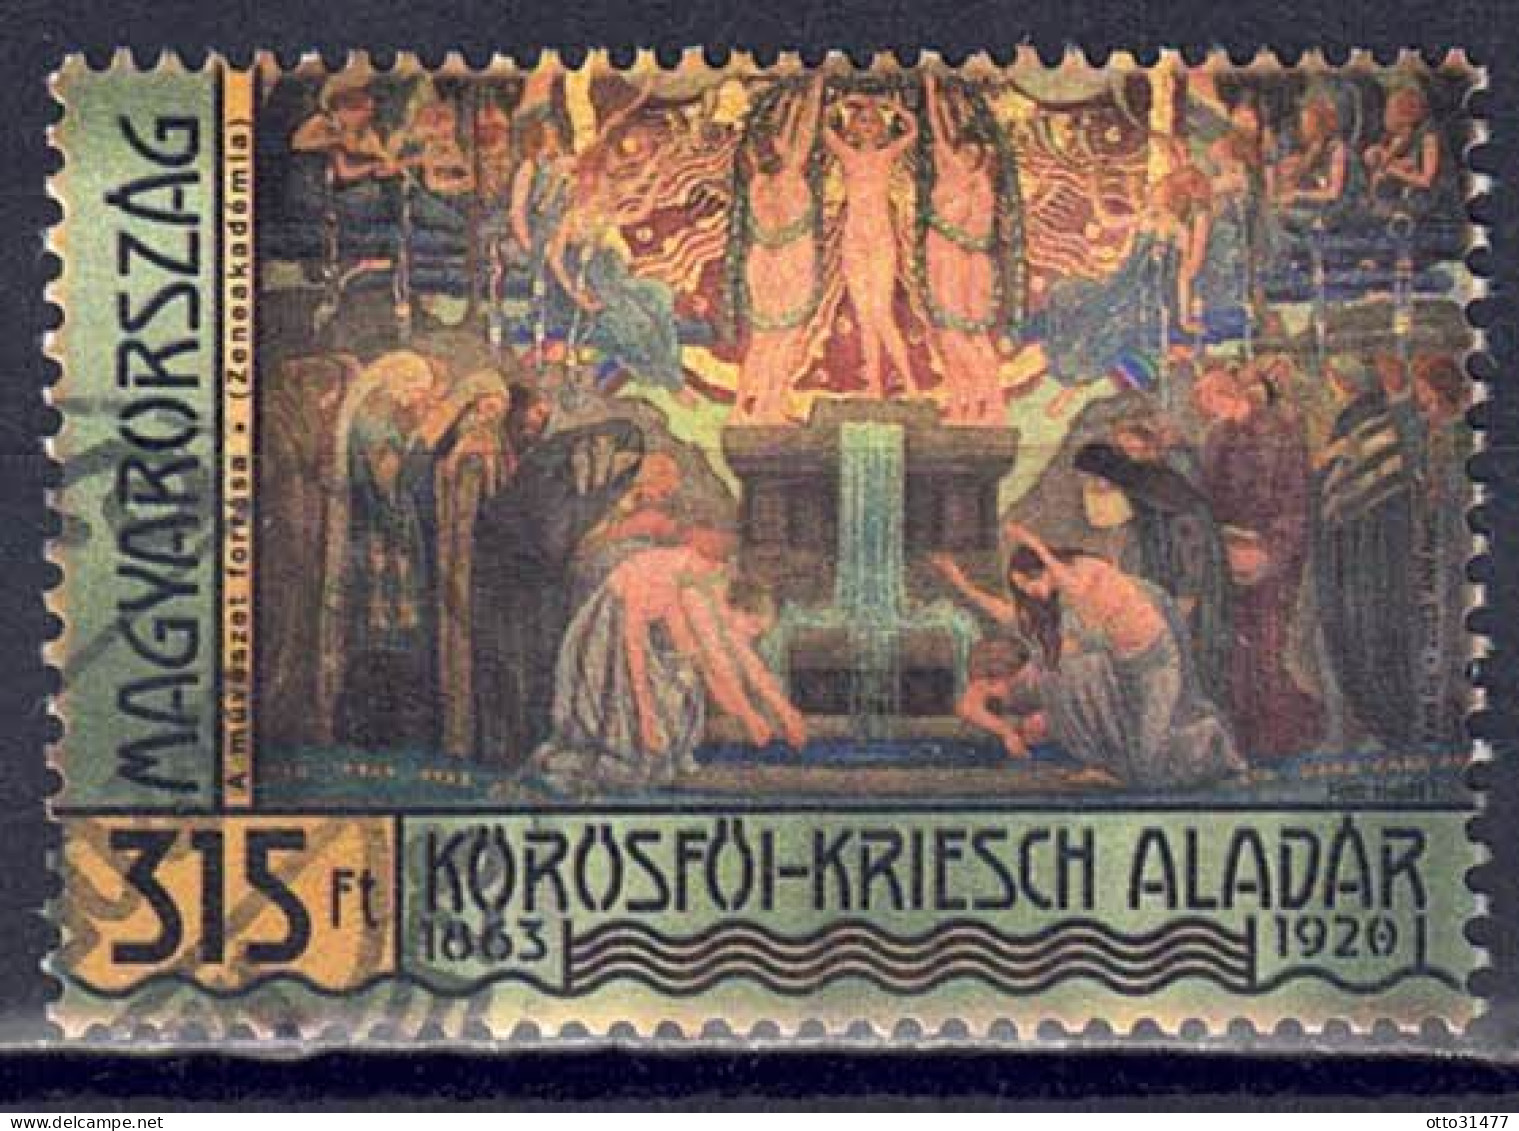 Ungarn 2013 - Aladár Körösföi-Kriesch, Nr. 5657, Gestempelt / Used - Oblitérés